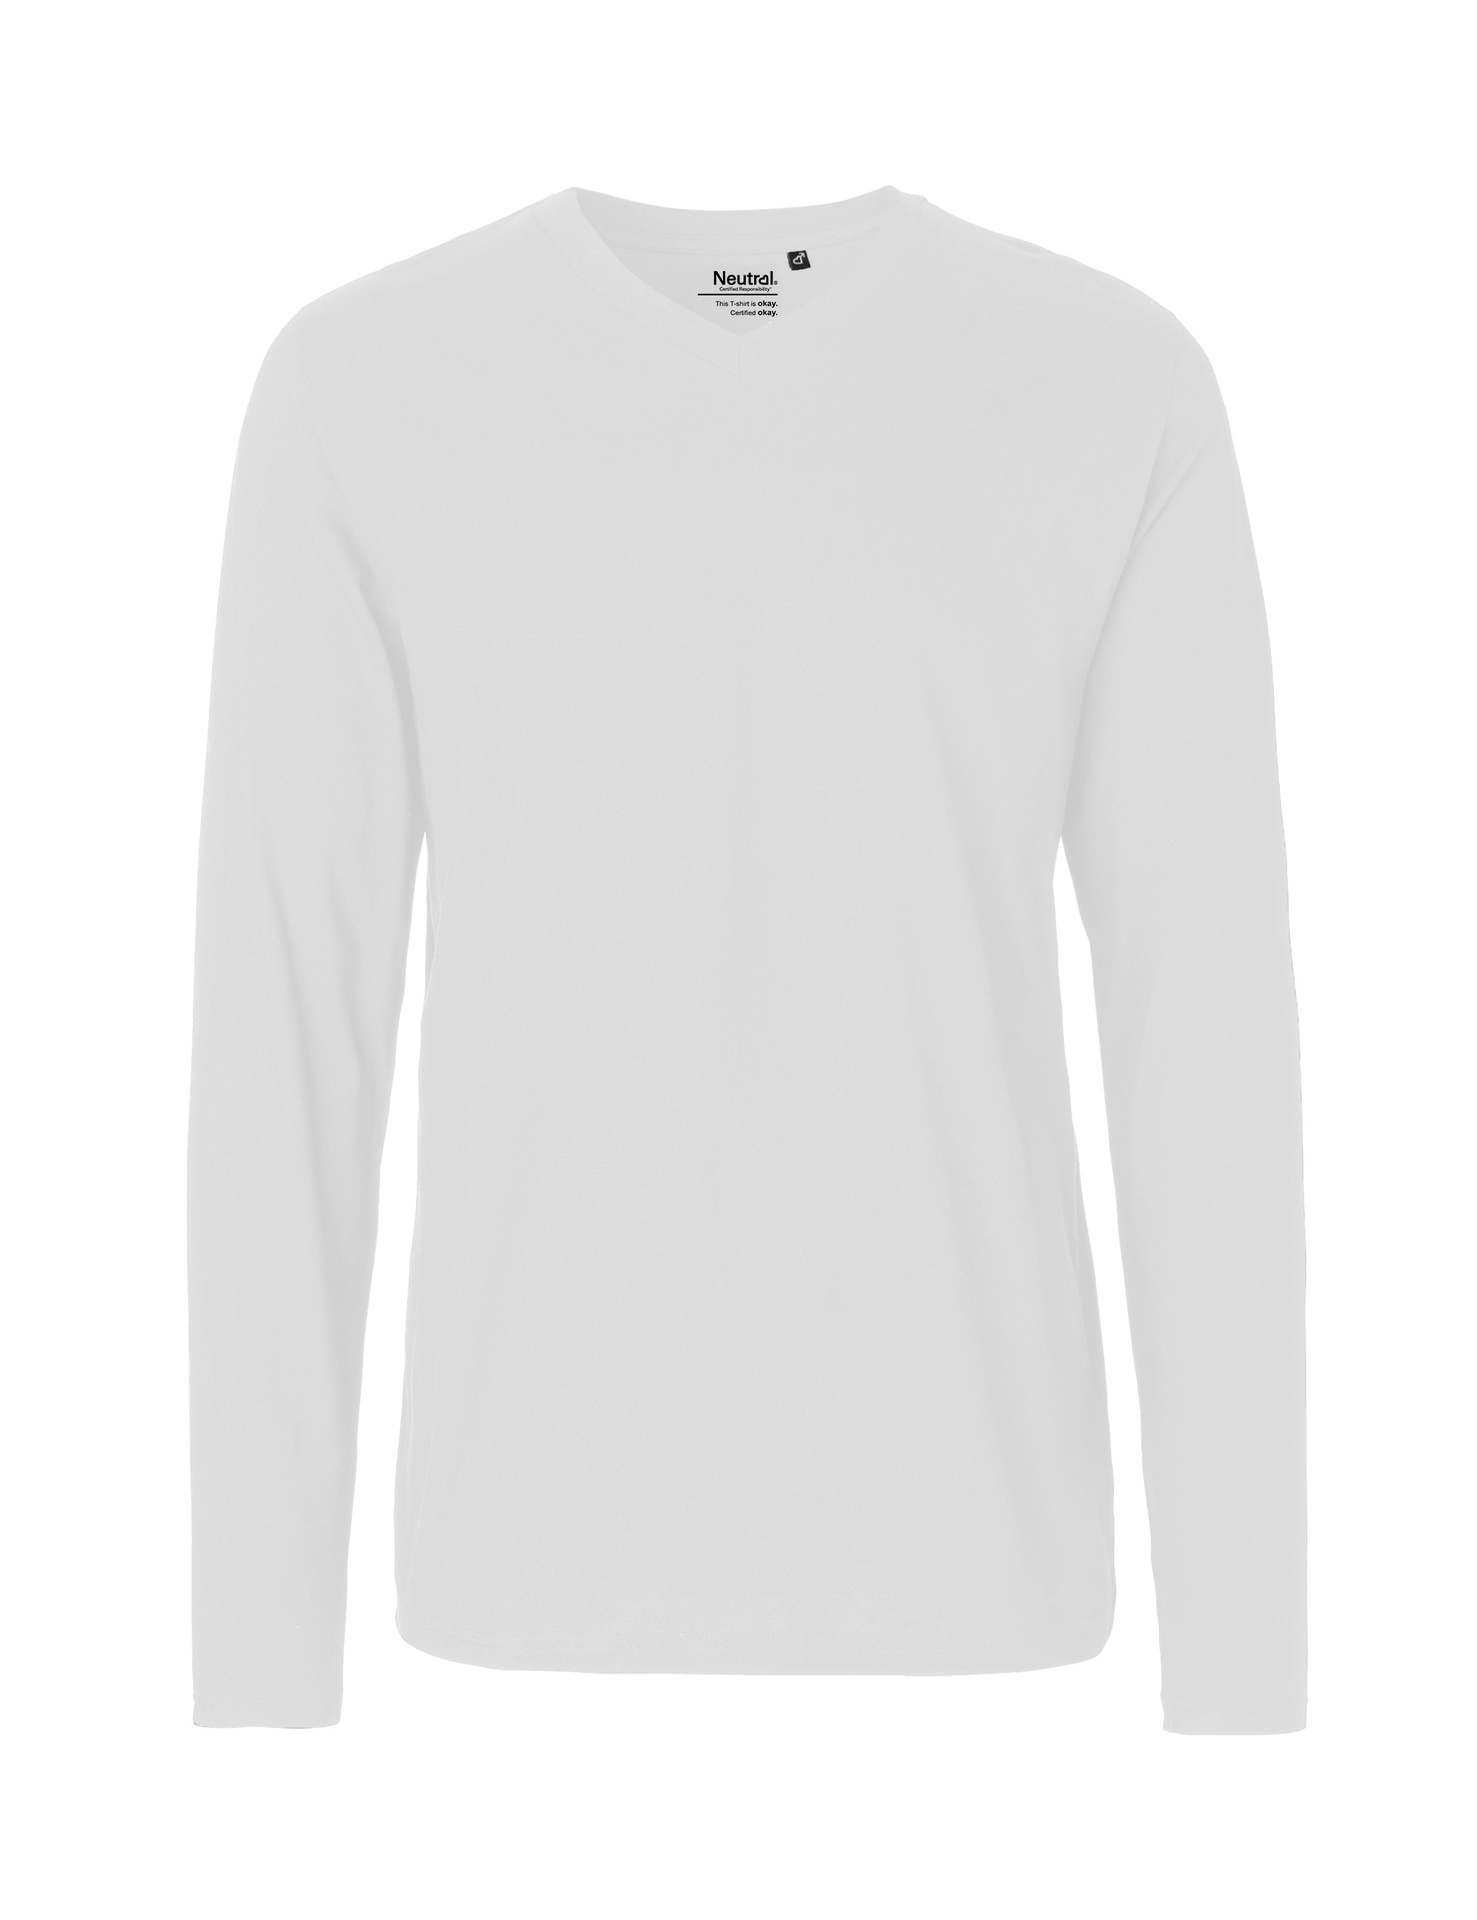 [PR/02478] Mens Long Sleeve V-Neck T-Shirt (White 01, S)